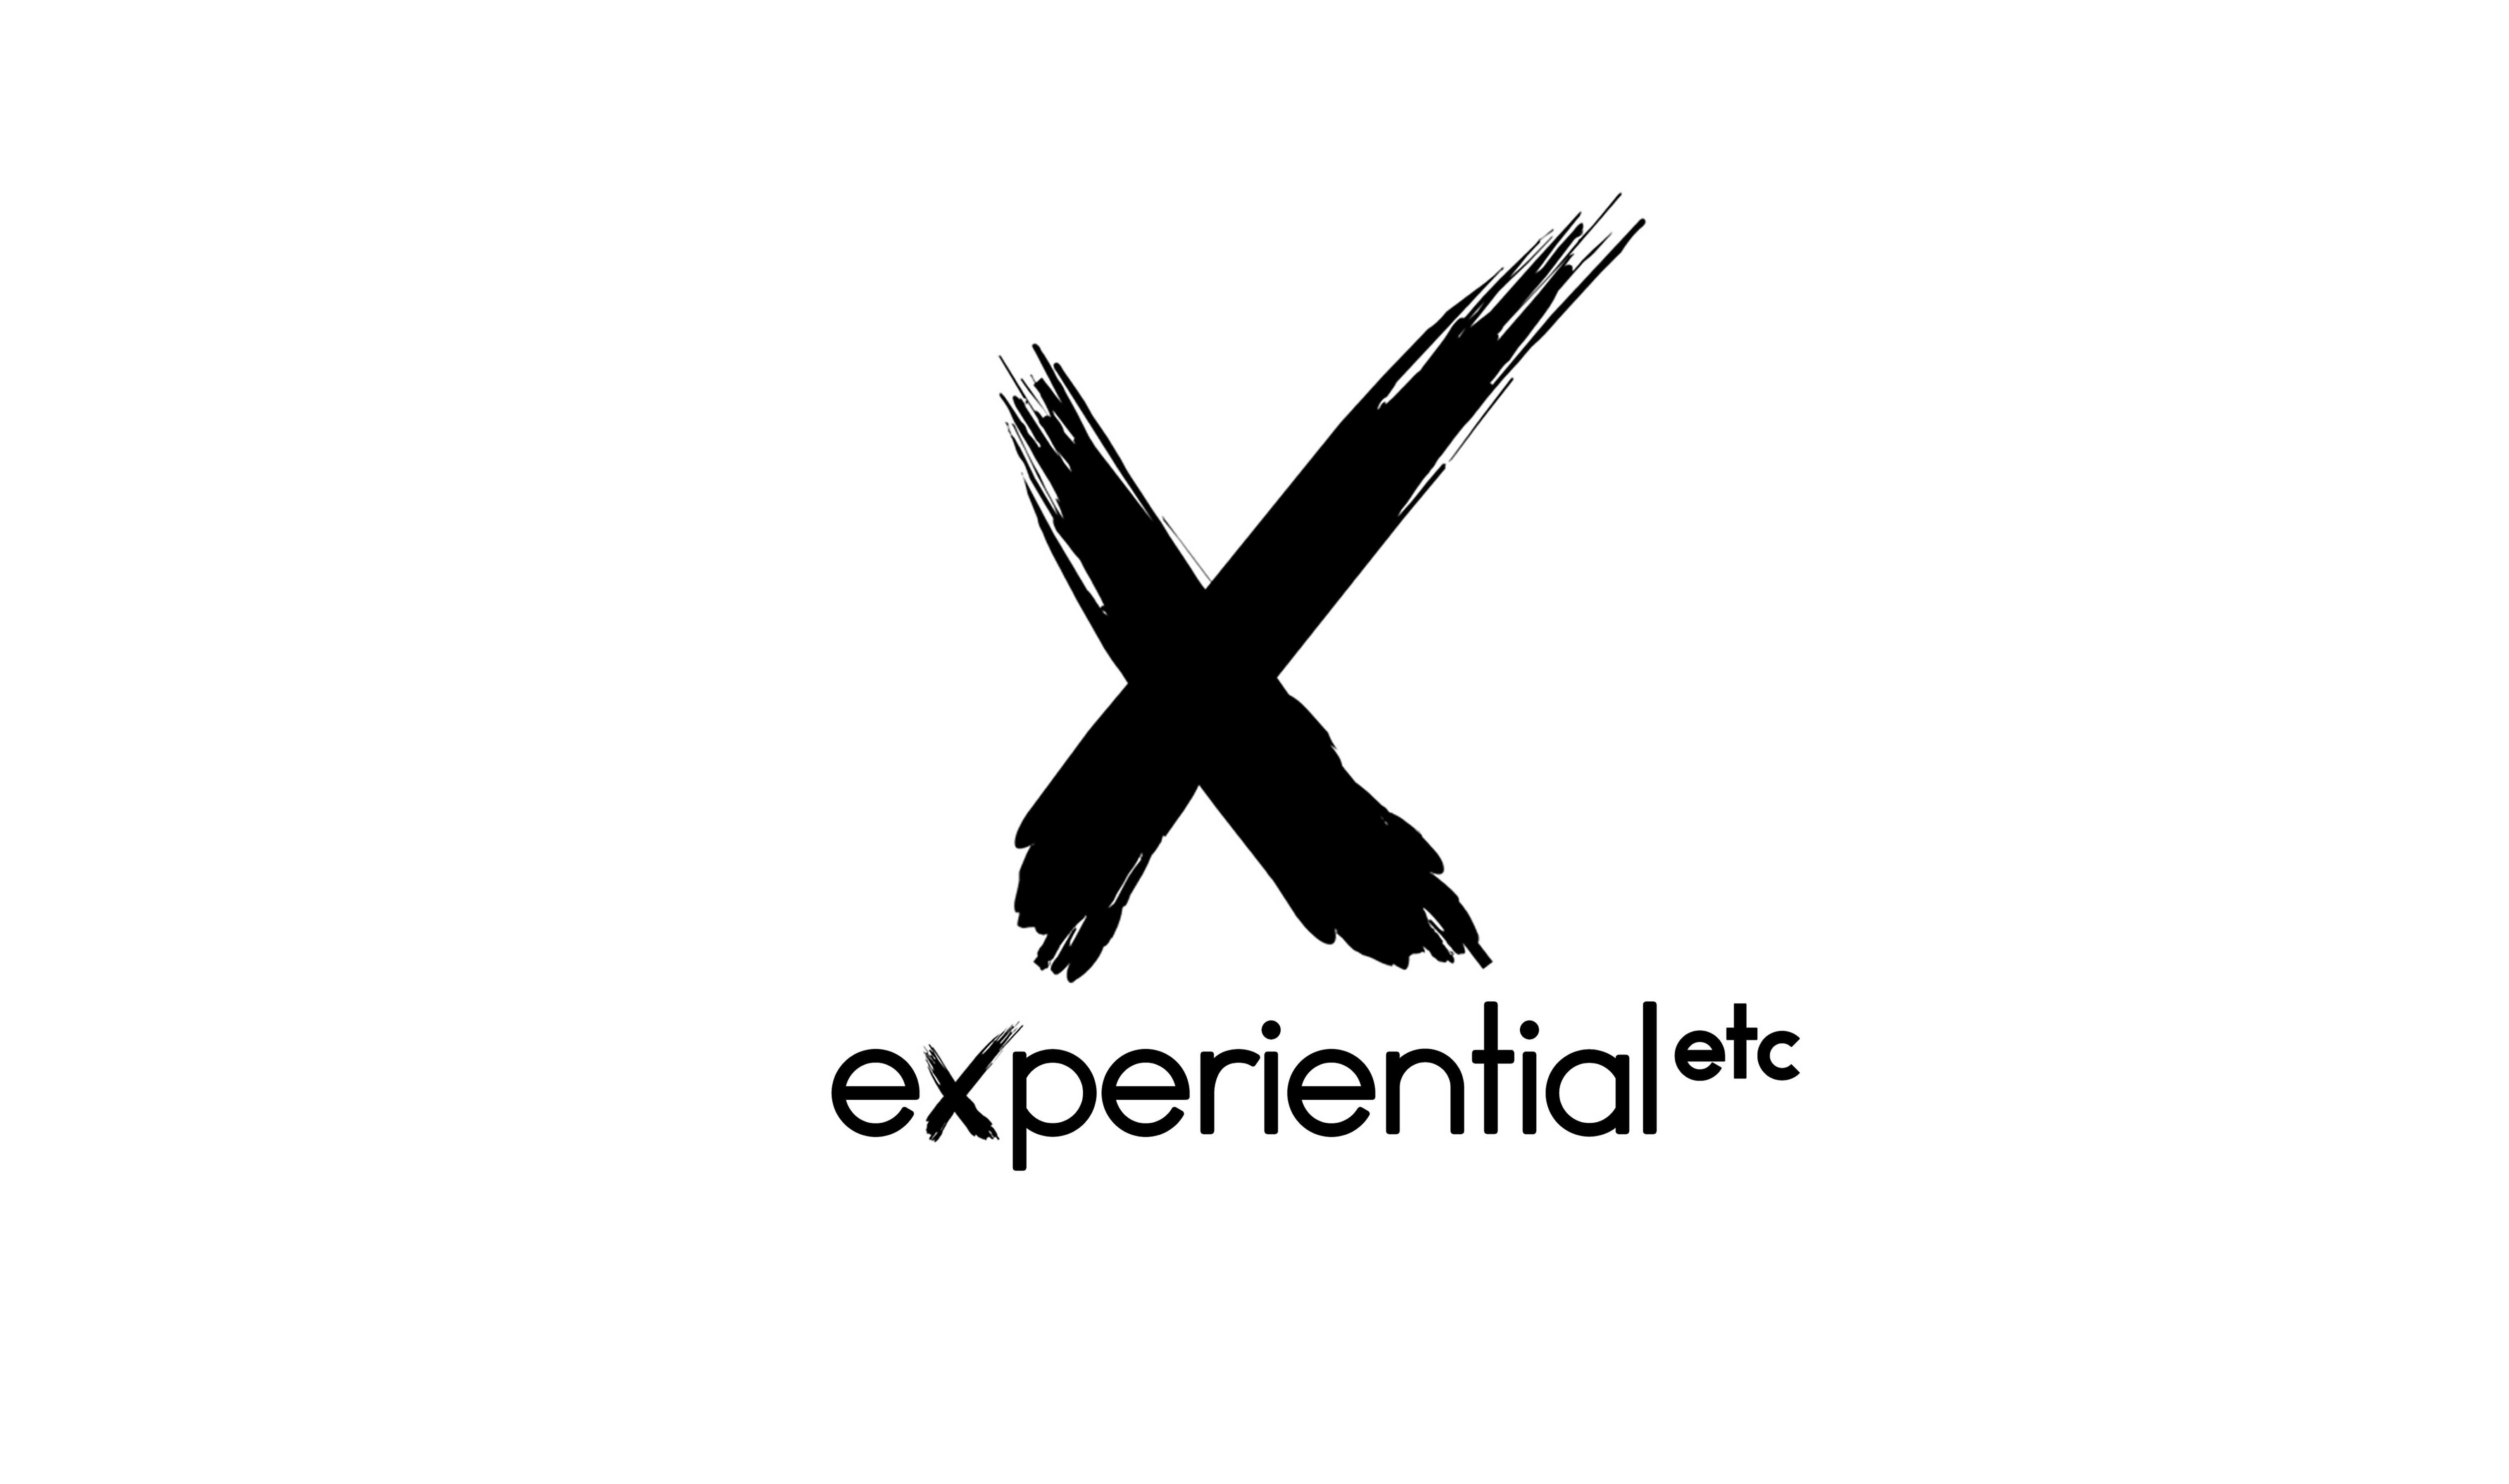 Experiential etc logo